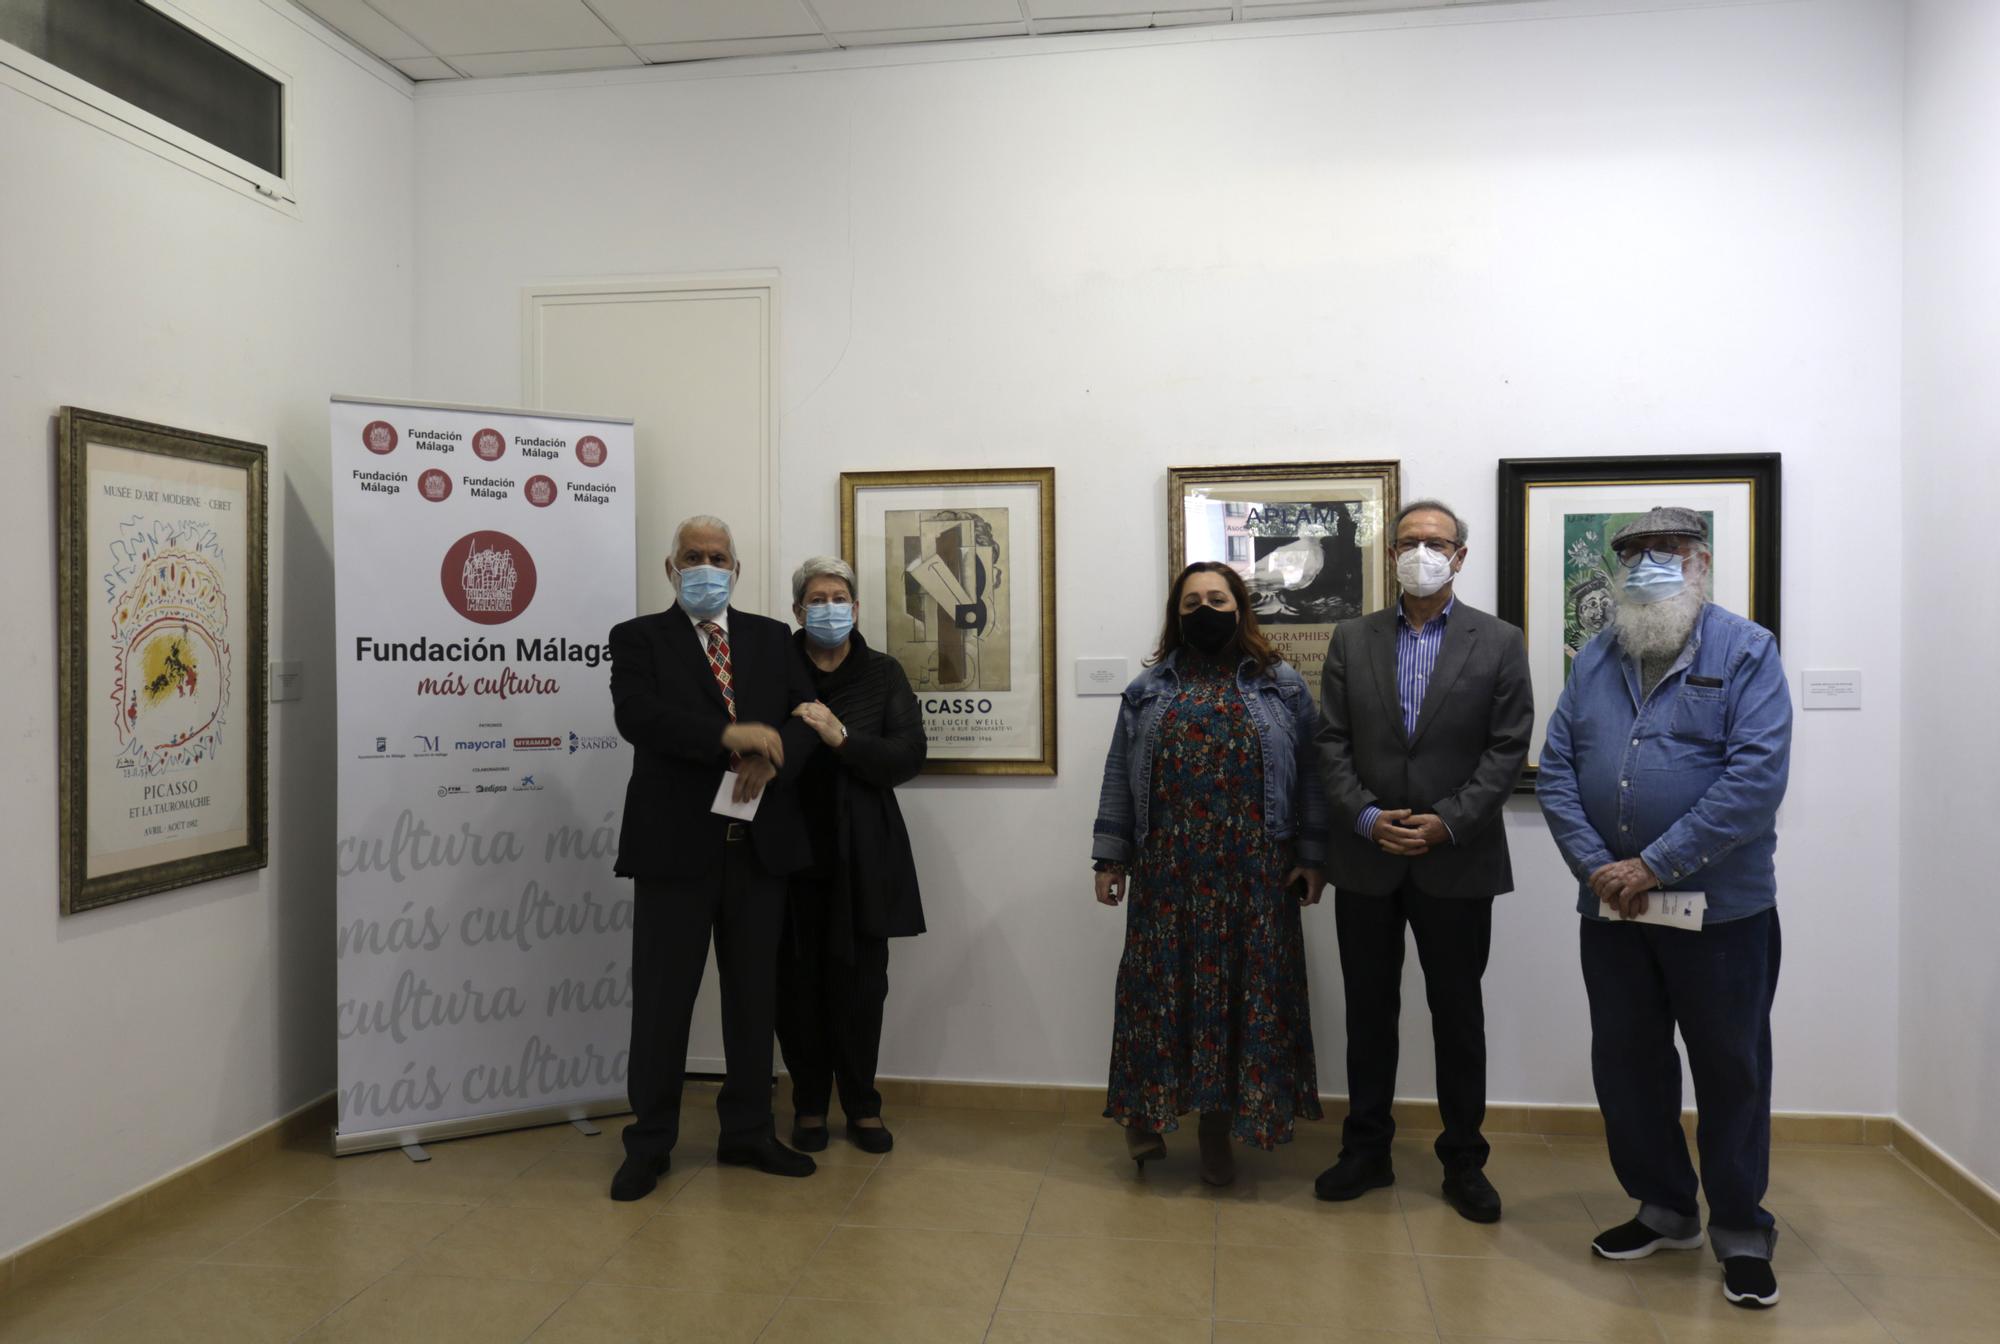 Las imágenes de la exposición 'Carteles de Picasso' en la sala Manuel Barbadillo